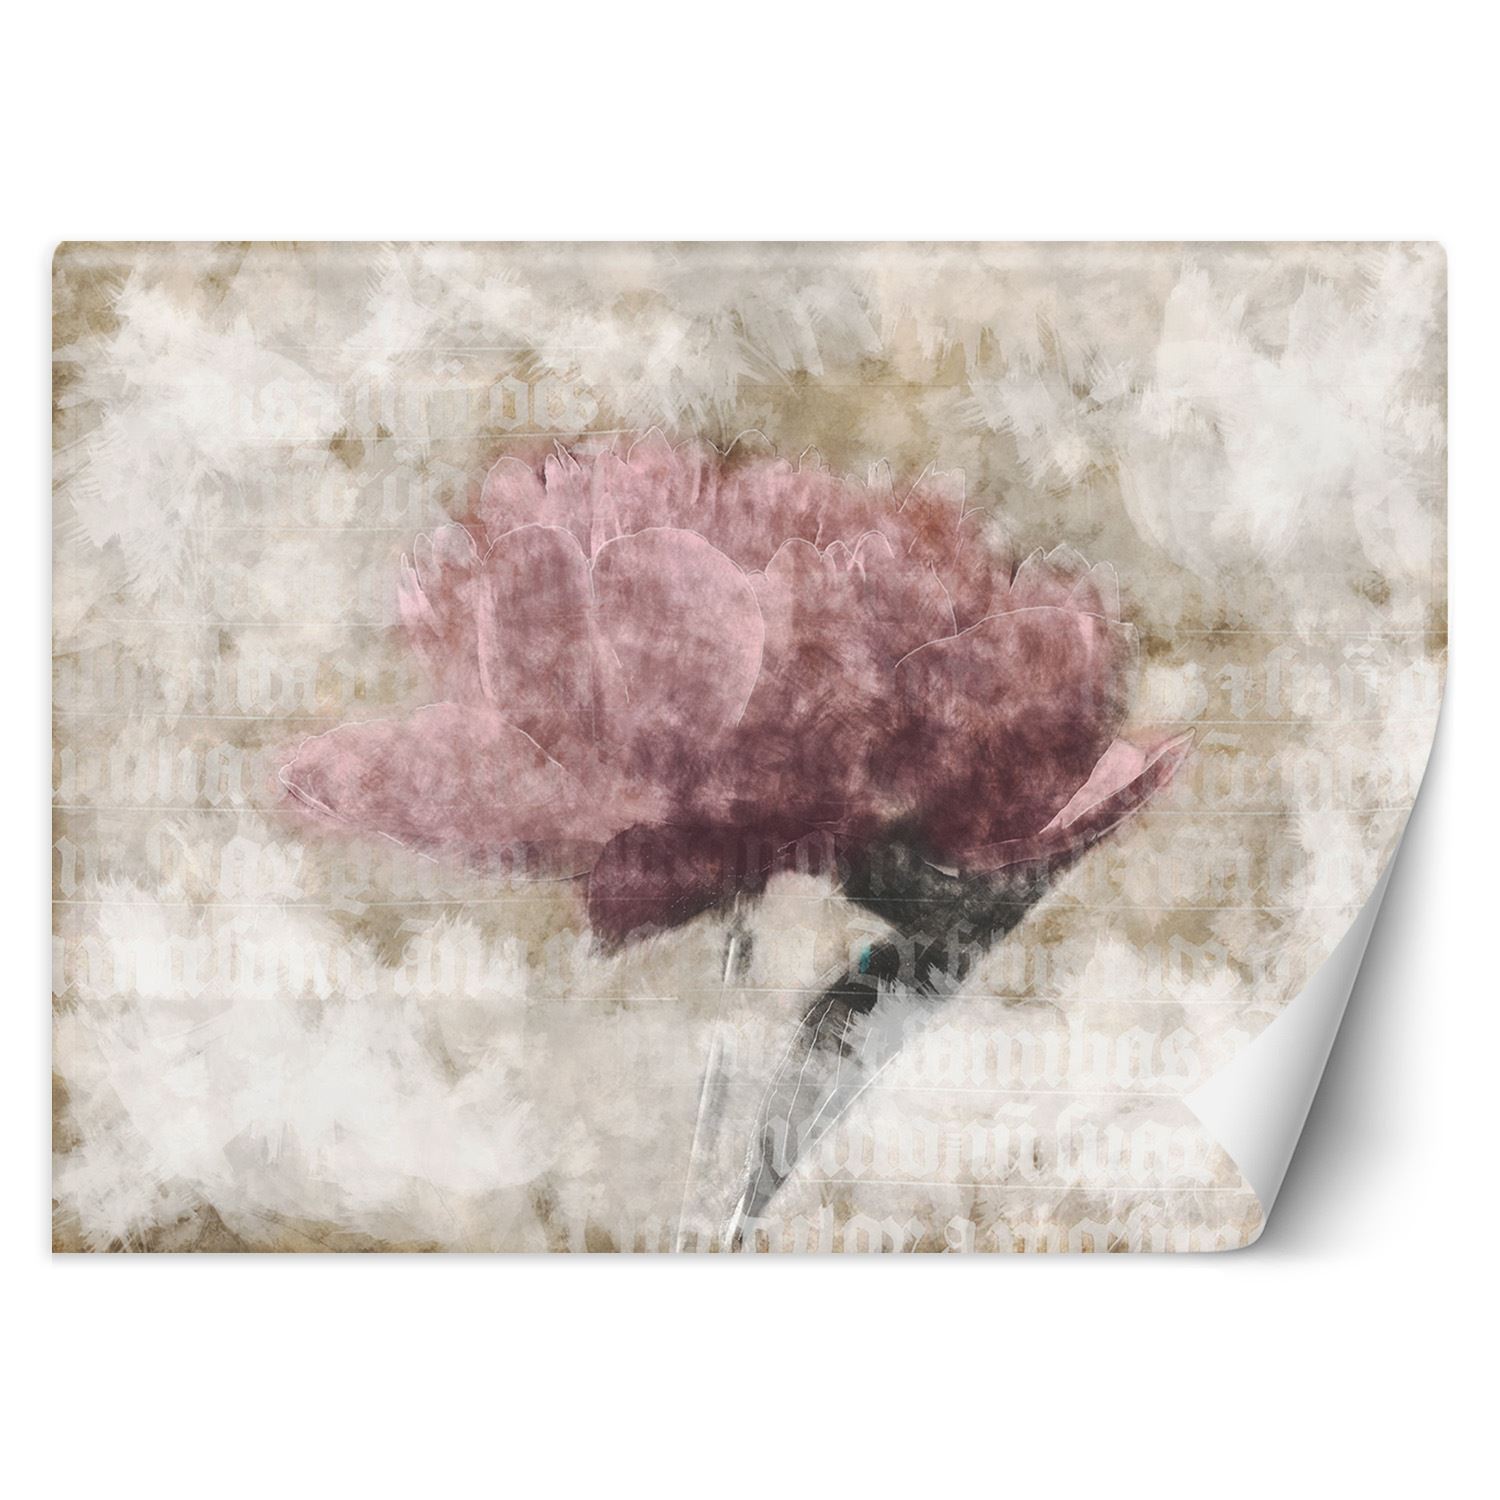 Trend24 – Behang – Abstracte Bloemen In Pastelkleuren – Behangpapier – Fotobehang 3D – Behang Woonkamer – 250x175x2 cm – Incl. behanglijm